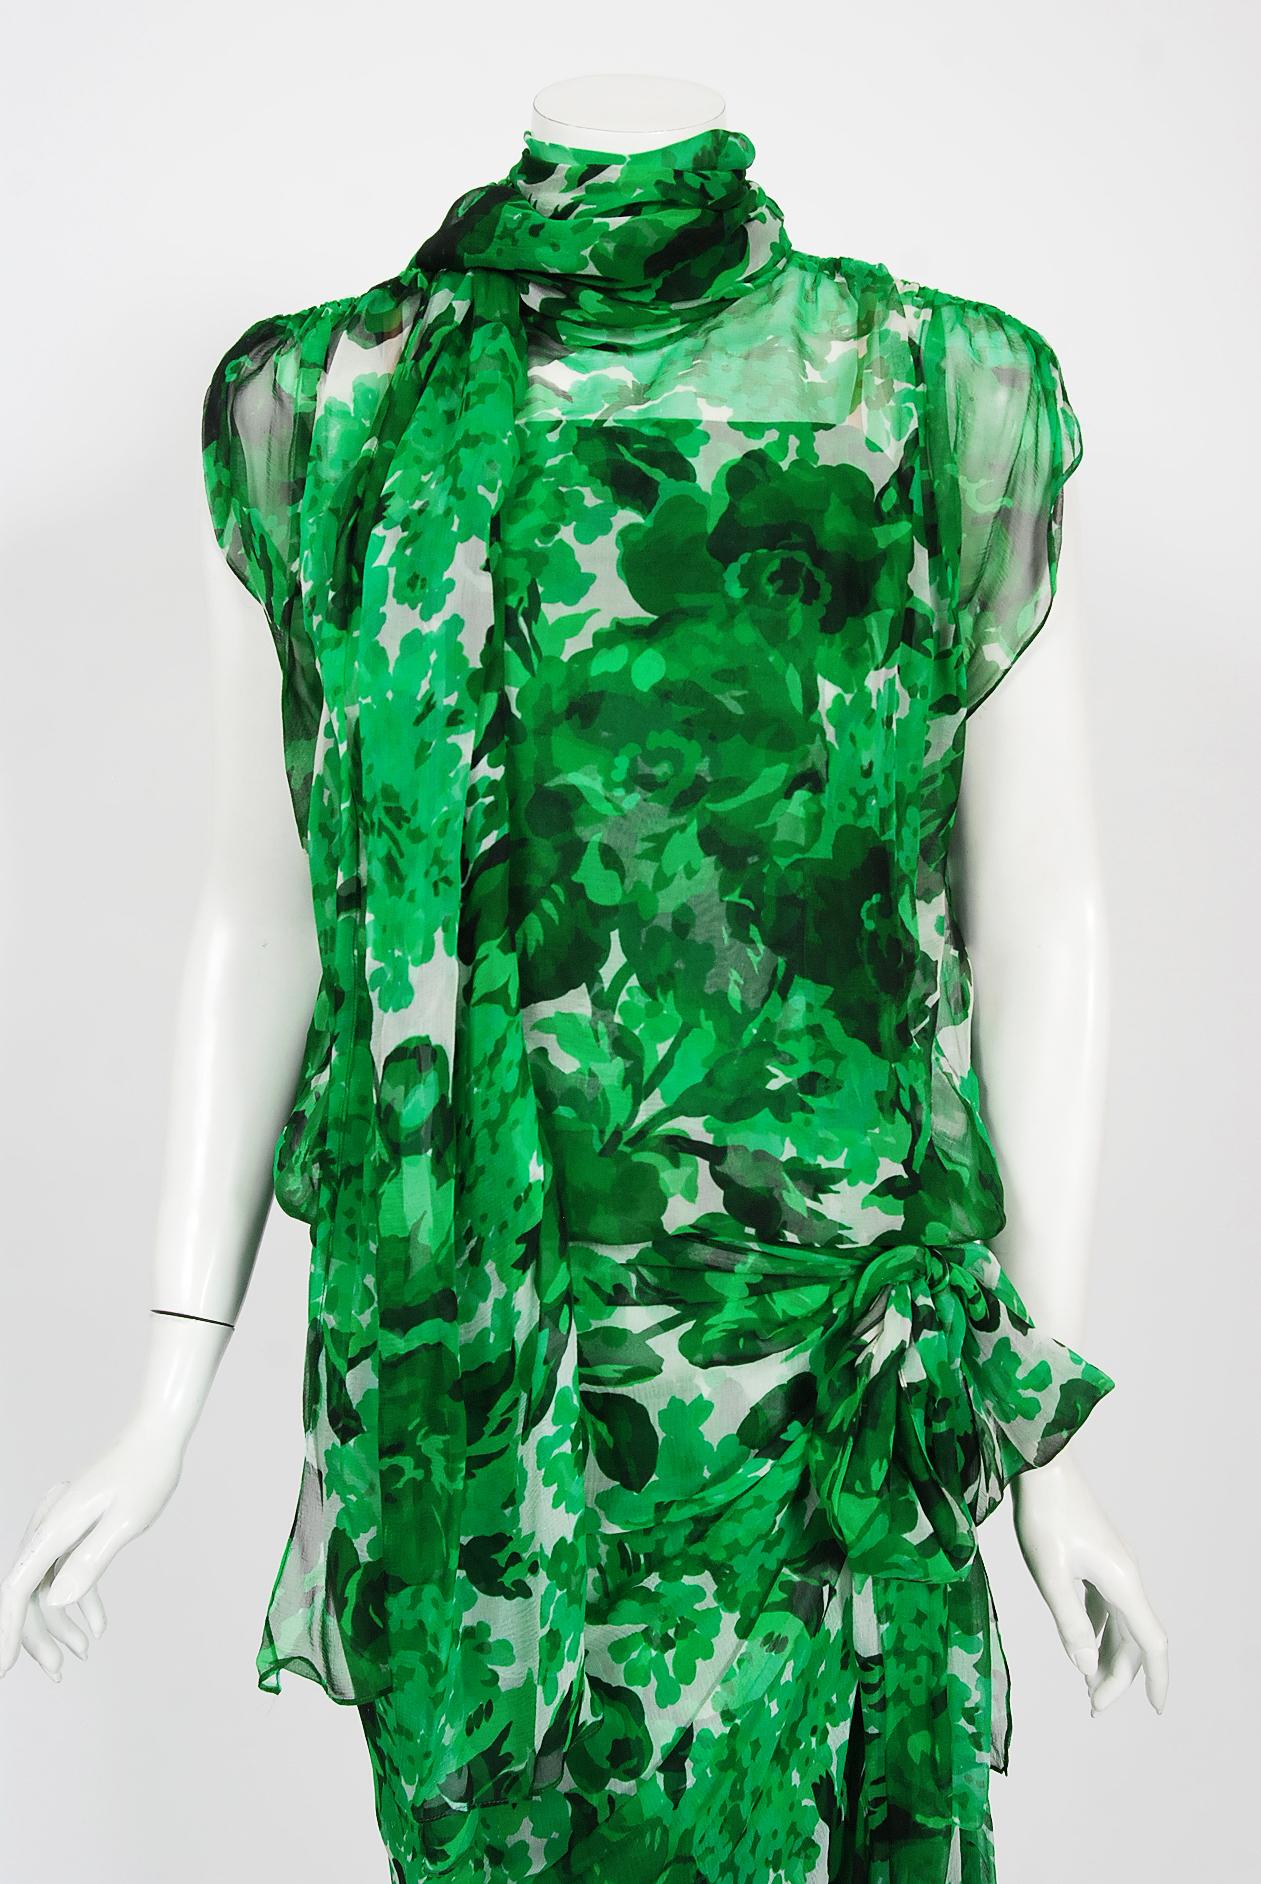 Ein wunderschönes smaragdgrünes, geblümtes Chiffonkleid aus Seide von Givenchy aus der Frühjahr/Sommer-Kollektion 1992. Givenchy, schon der Name steht für Glamour, raffinierte Eleganz, Schlichtheit und Stil. Sein Markenzeichen, die fließenden Linien